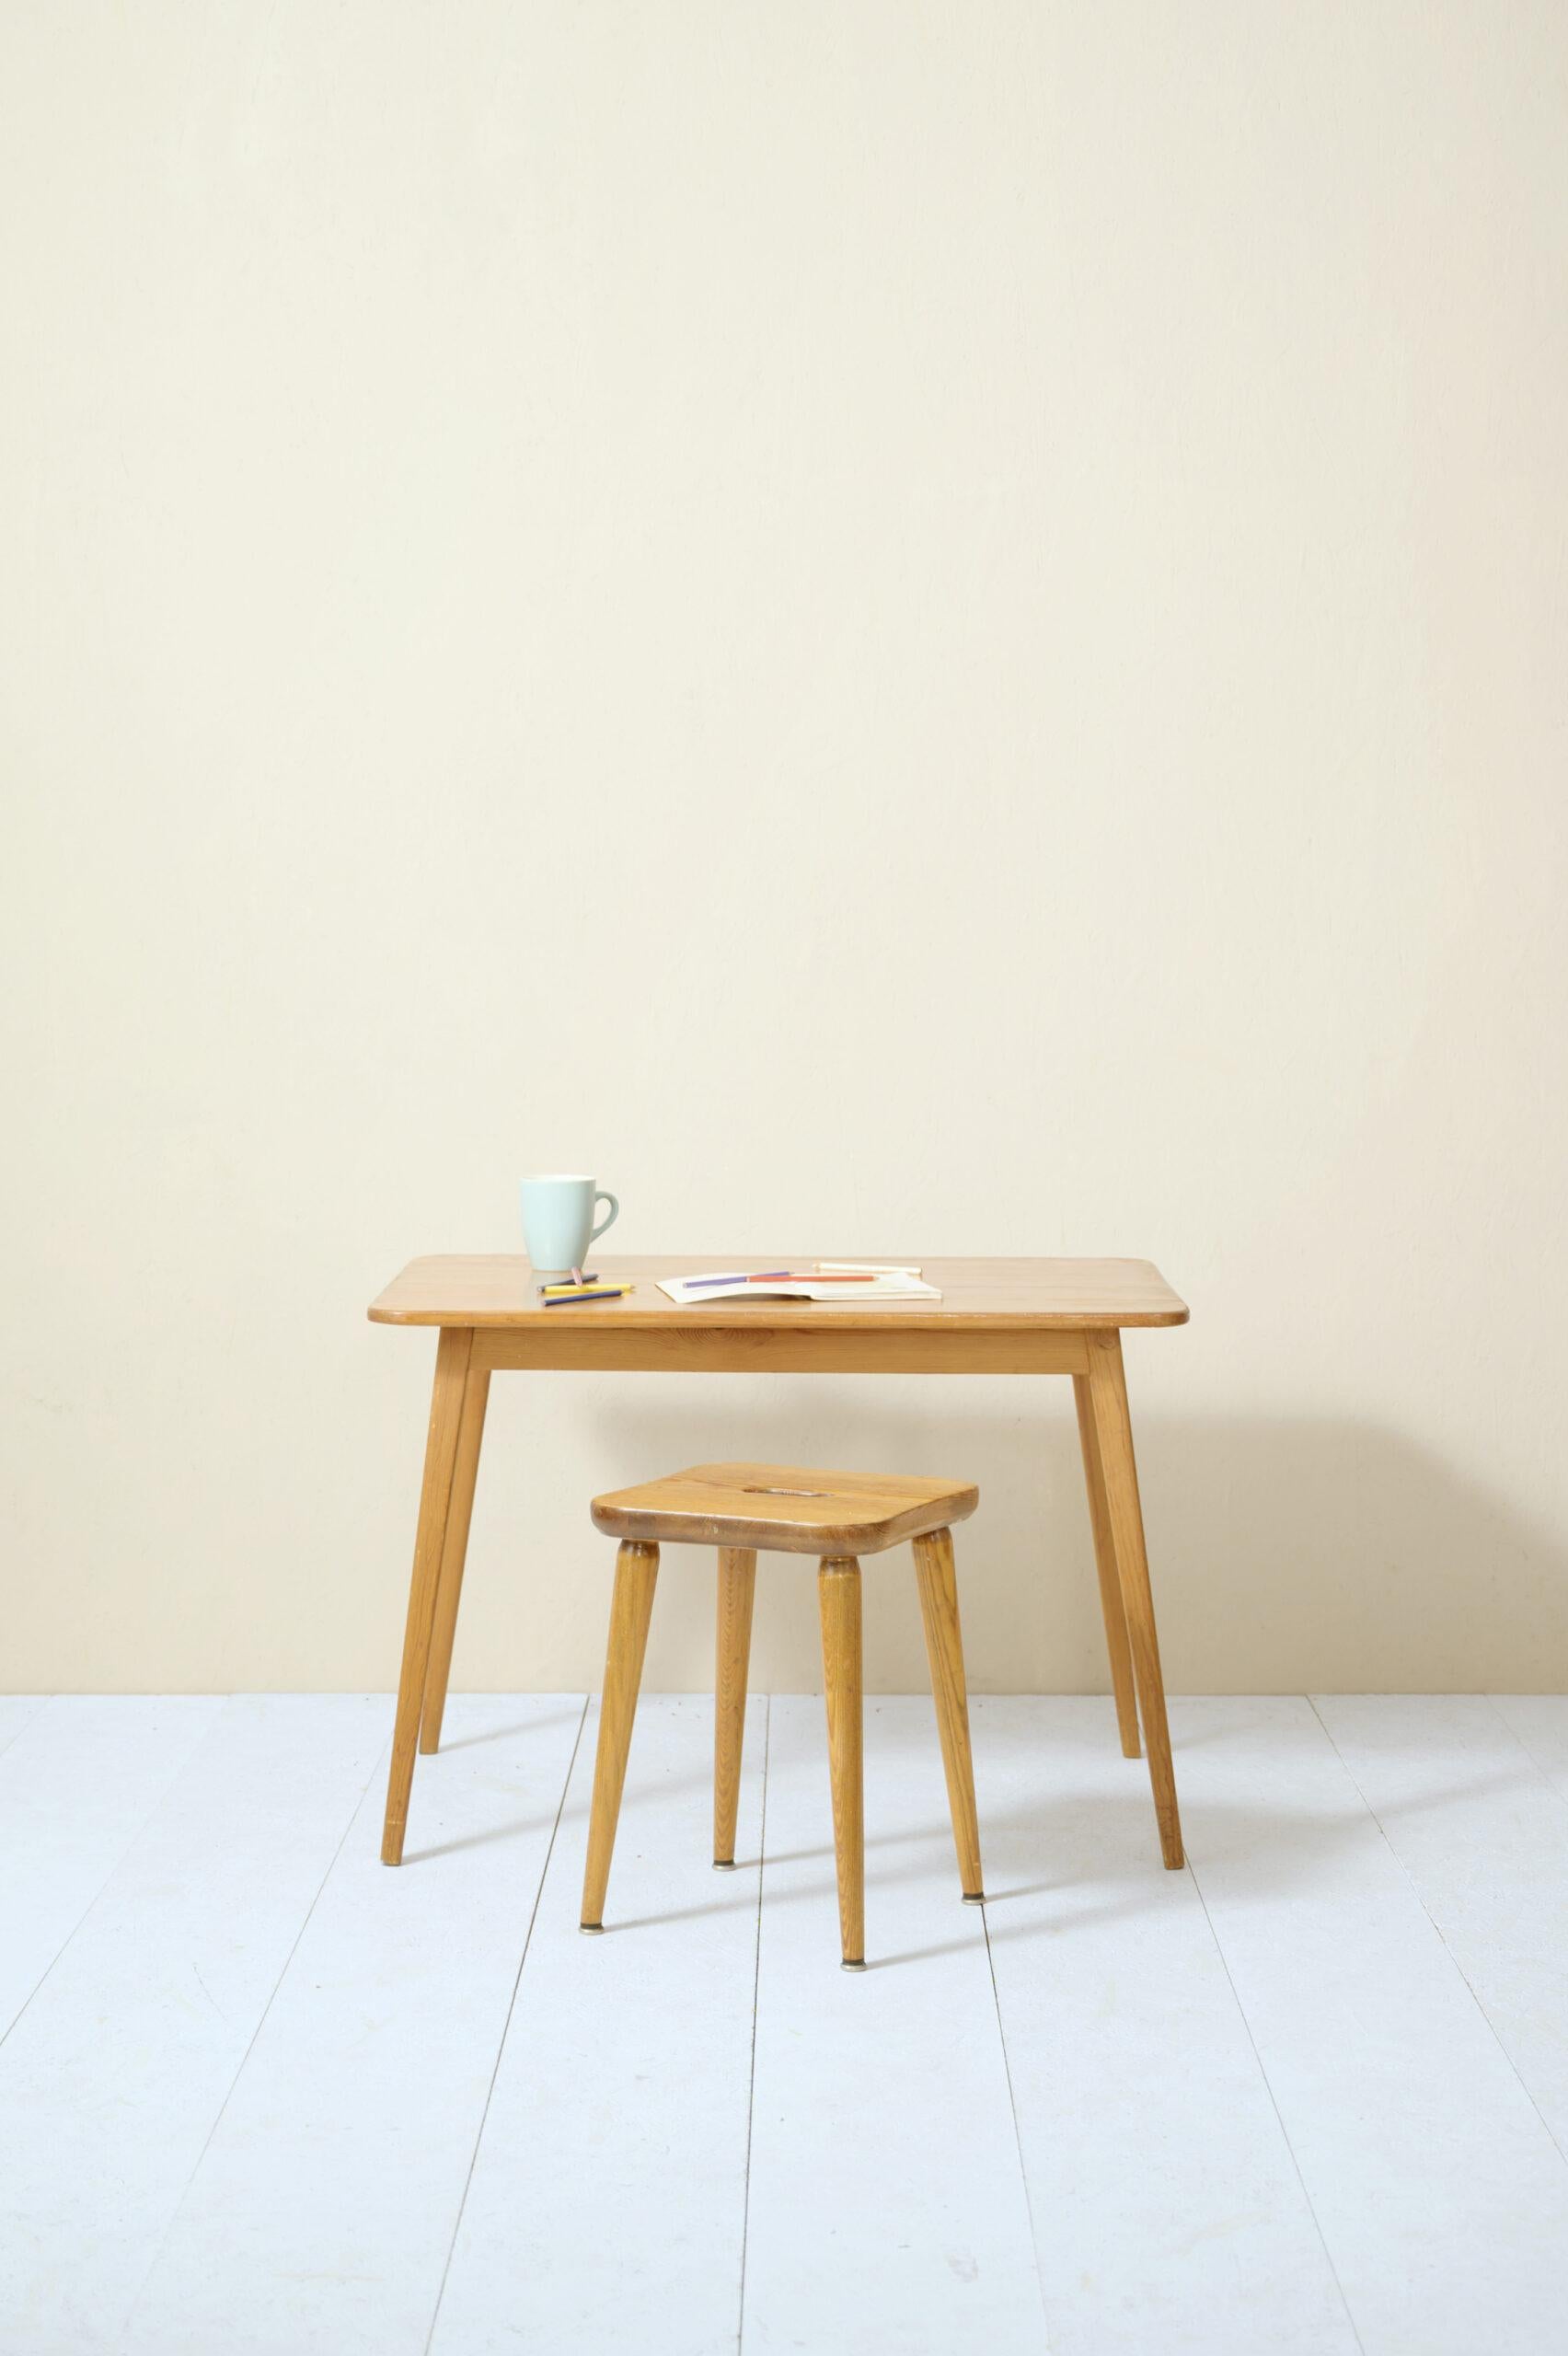 Ensemble table et tabouret en bois de pin, conçu par G. Malmvall pour la société suédoise de fourrure.

Deux meubles d'origine scandinave, évidents par le type de bois utilisé et le style rustique mais déjà moderne. Caractérisé par des lignes